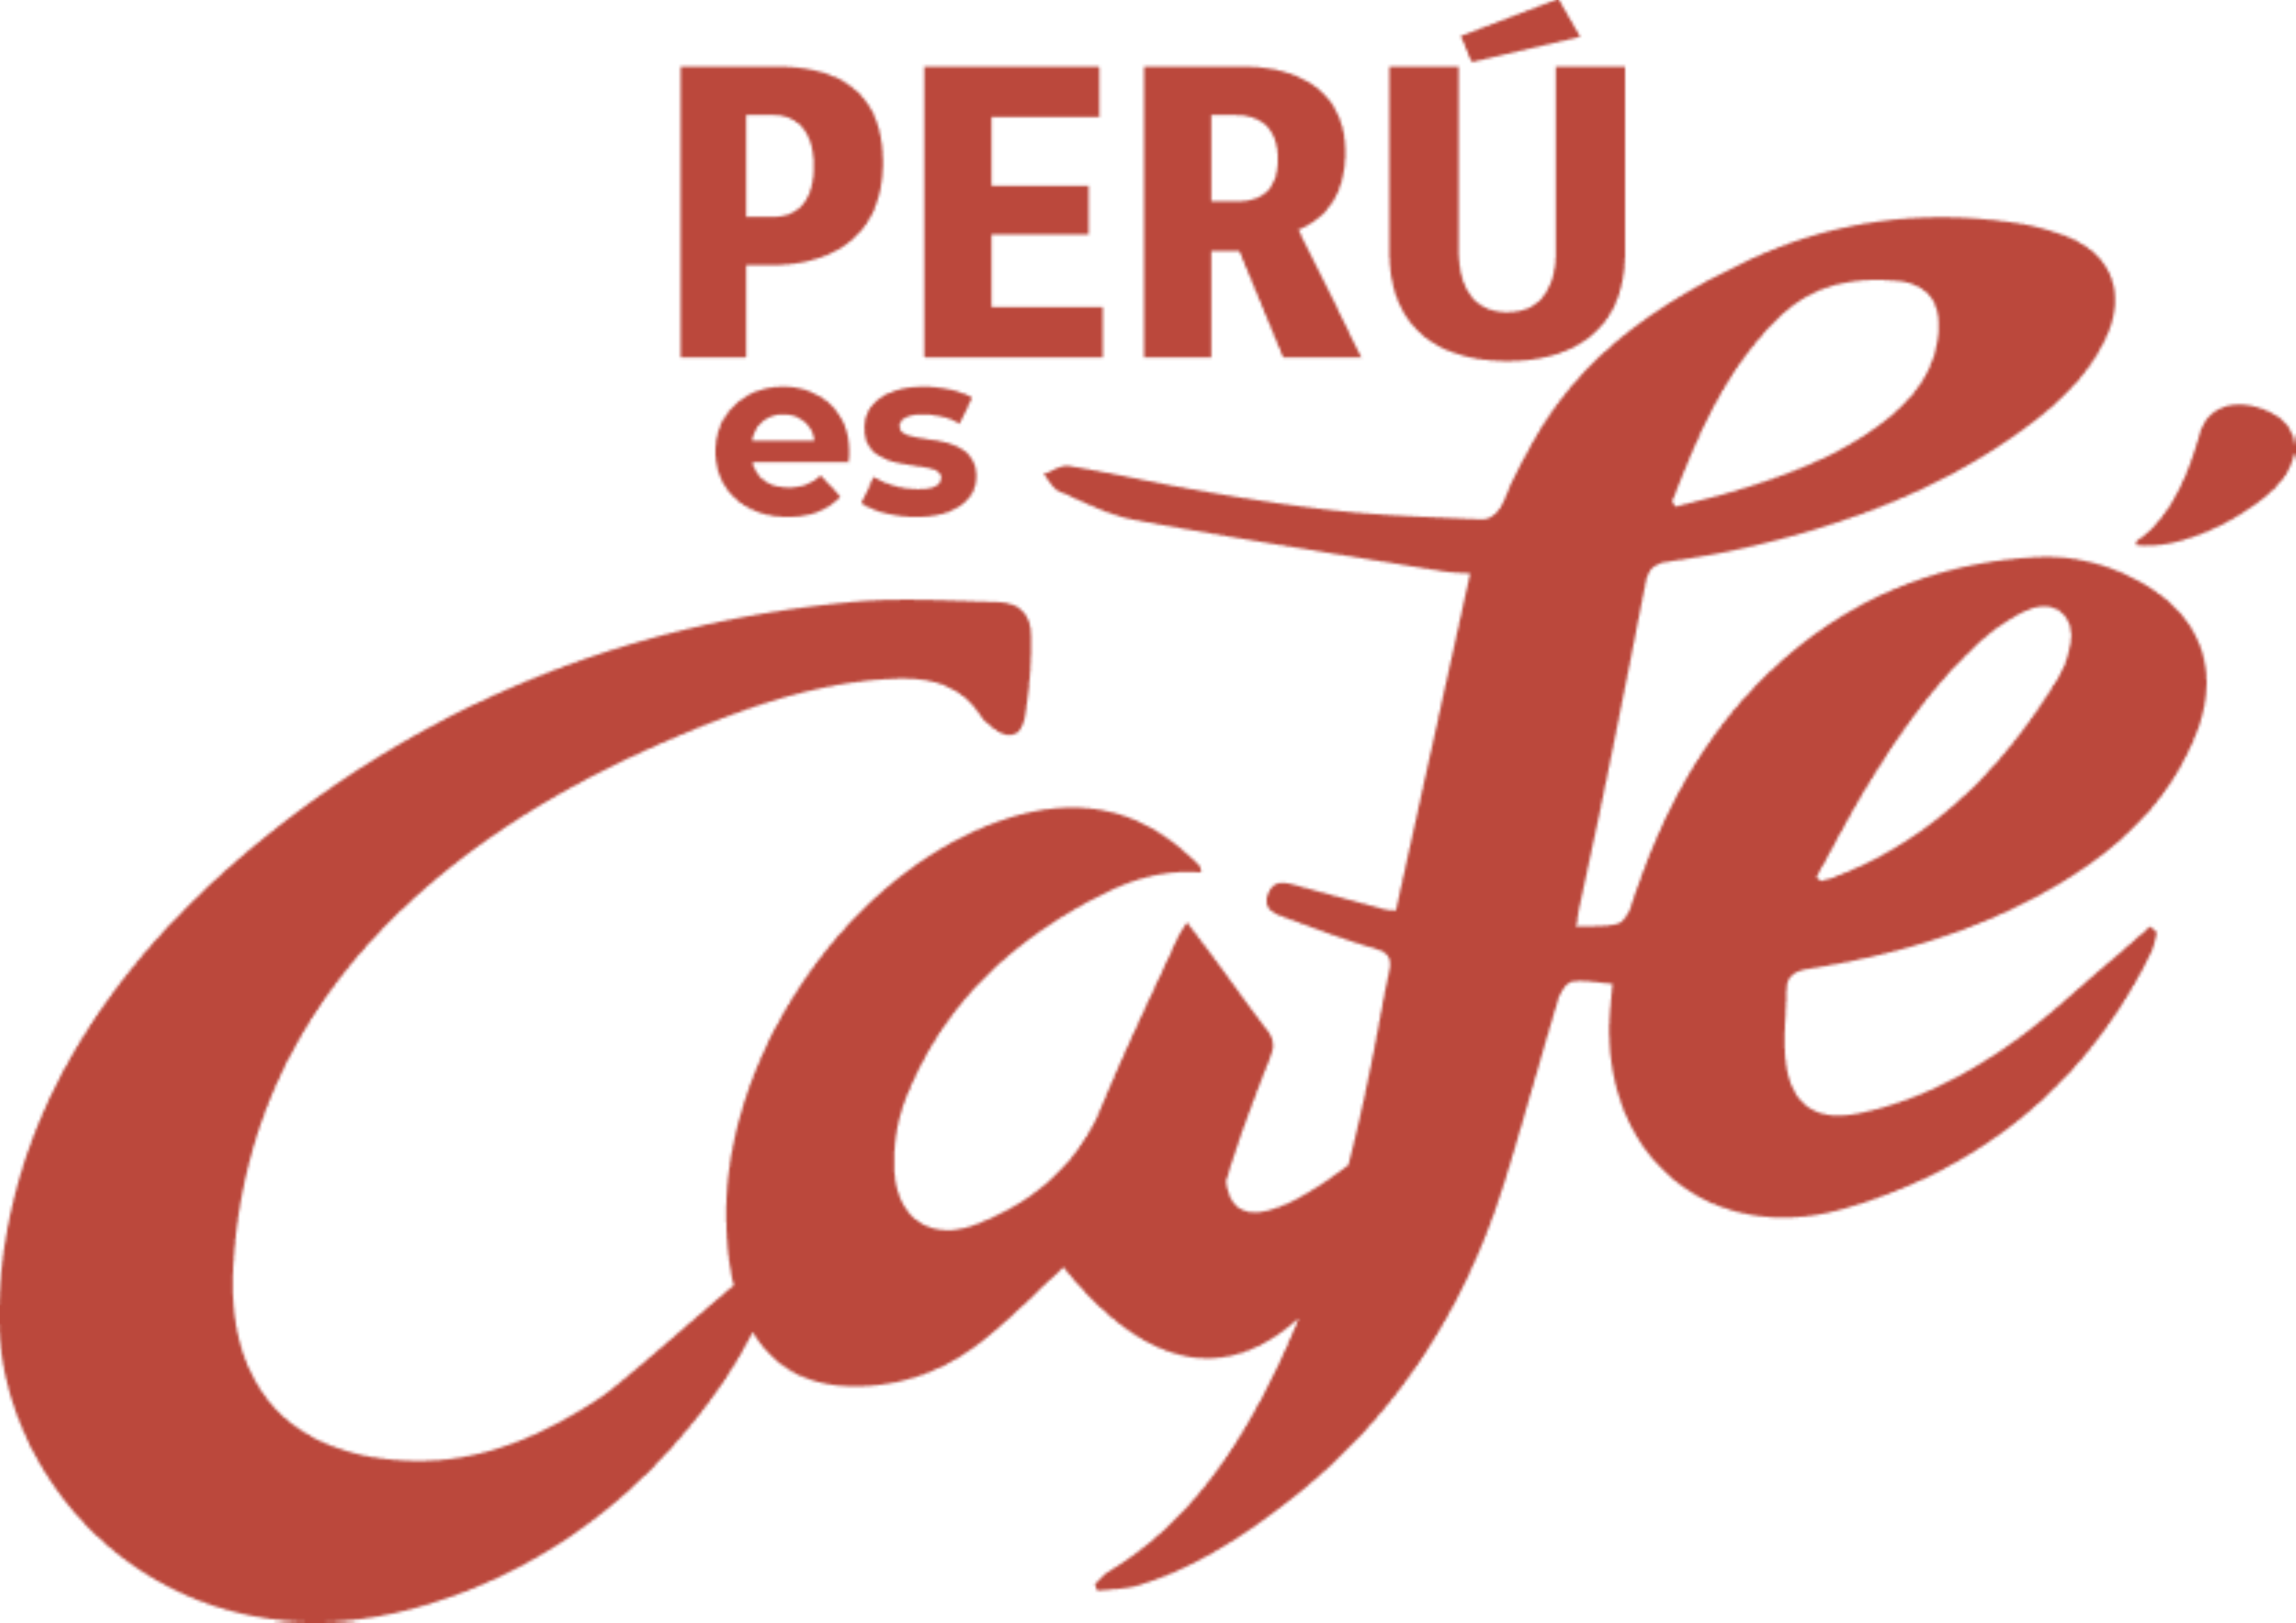 Peru es cafe logo